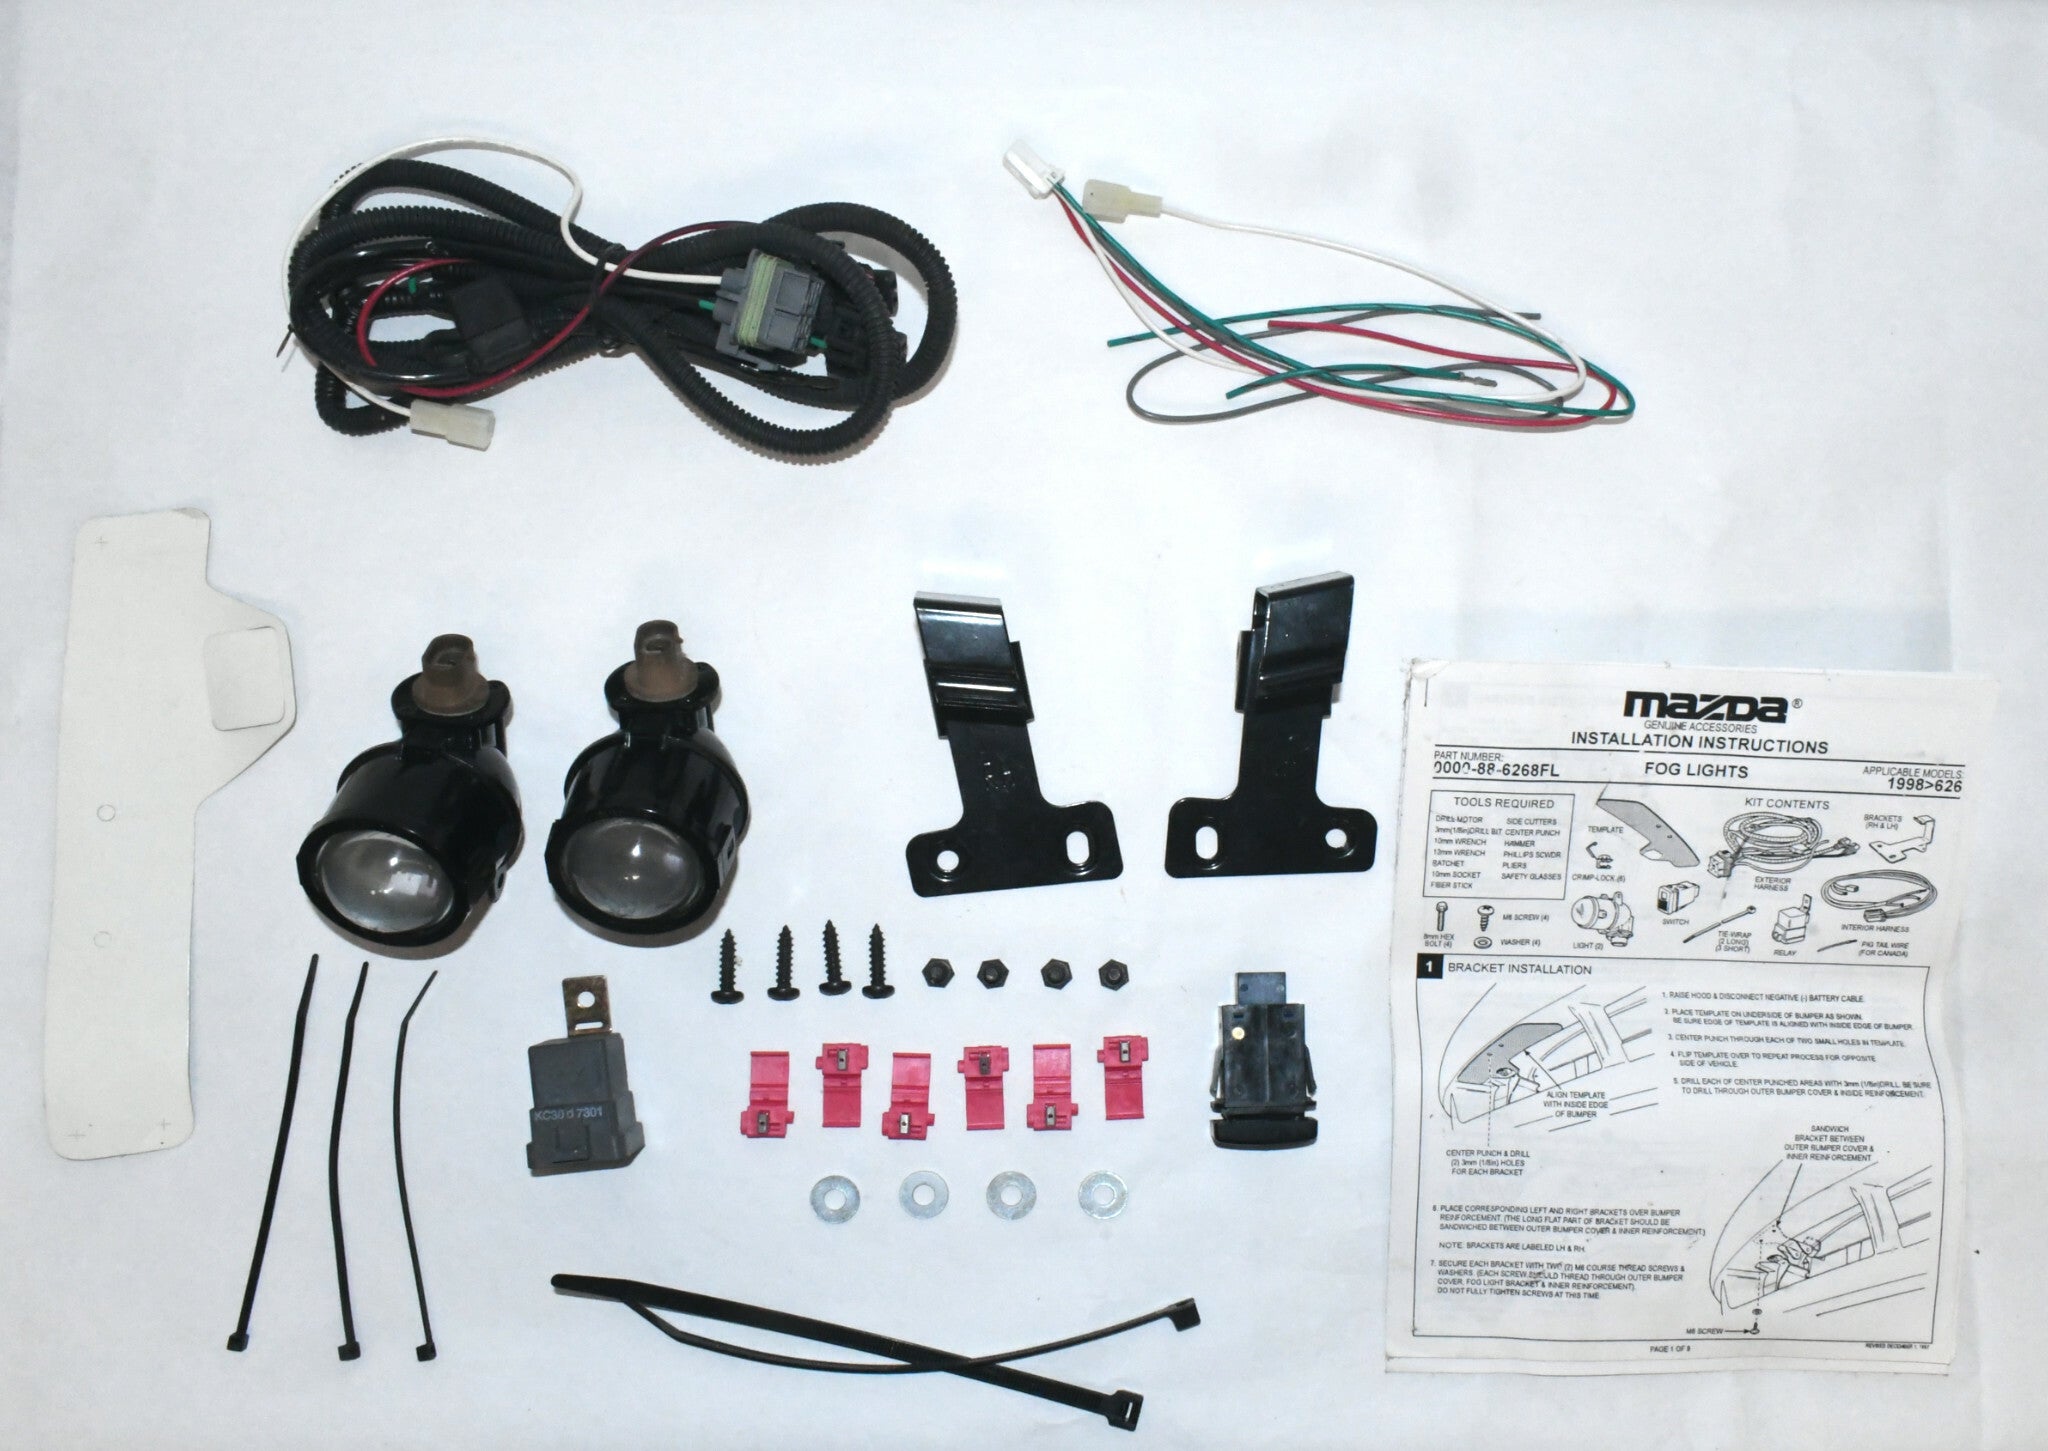 NEW genuine accessory fog light kit for 1992-98 Mazda 626 0000-88-6268